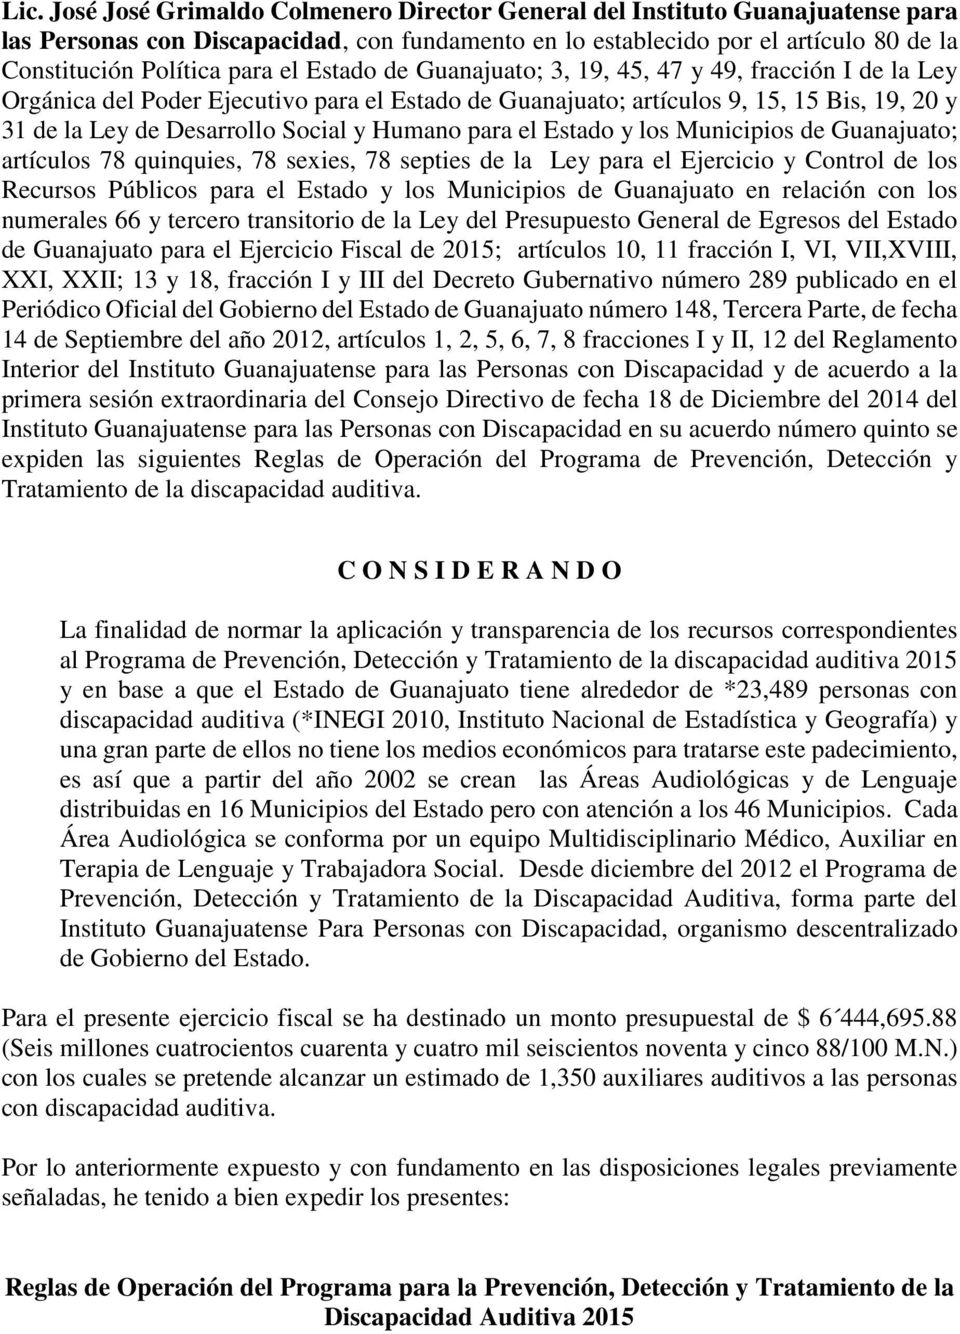 Humano para el Estado y los Municipios de Guanajuato; artículos 78 quinquies, 78 sexies, 78 septies de la Ley para el Ejercicio y Control de los Recursos Públicos para el Estado y los Municipios de